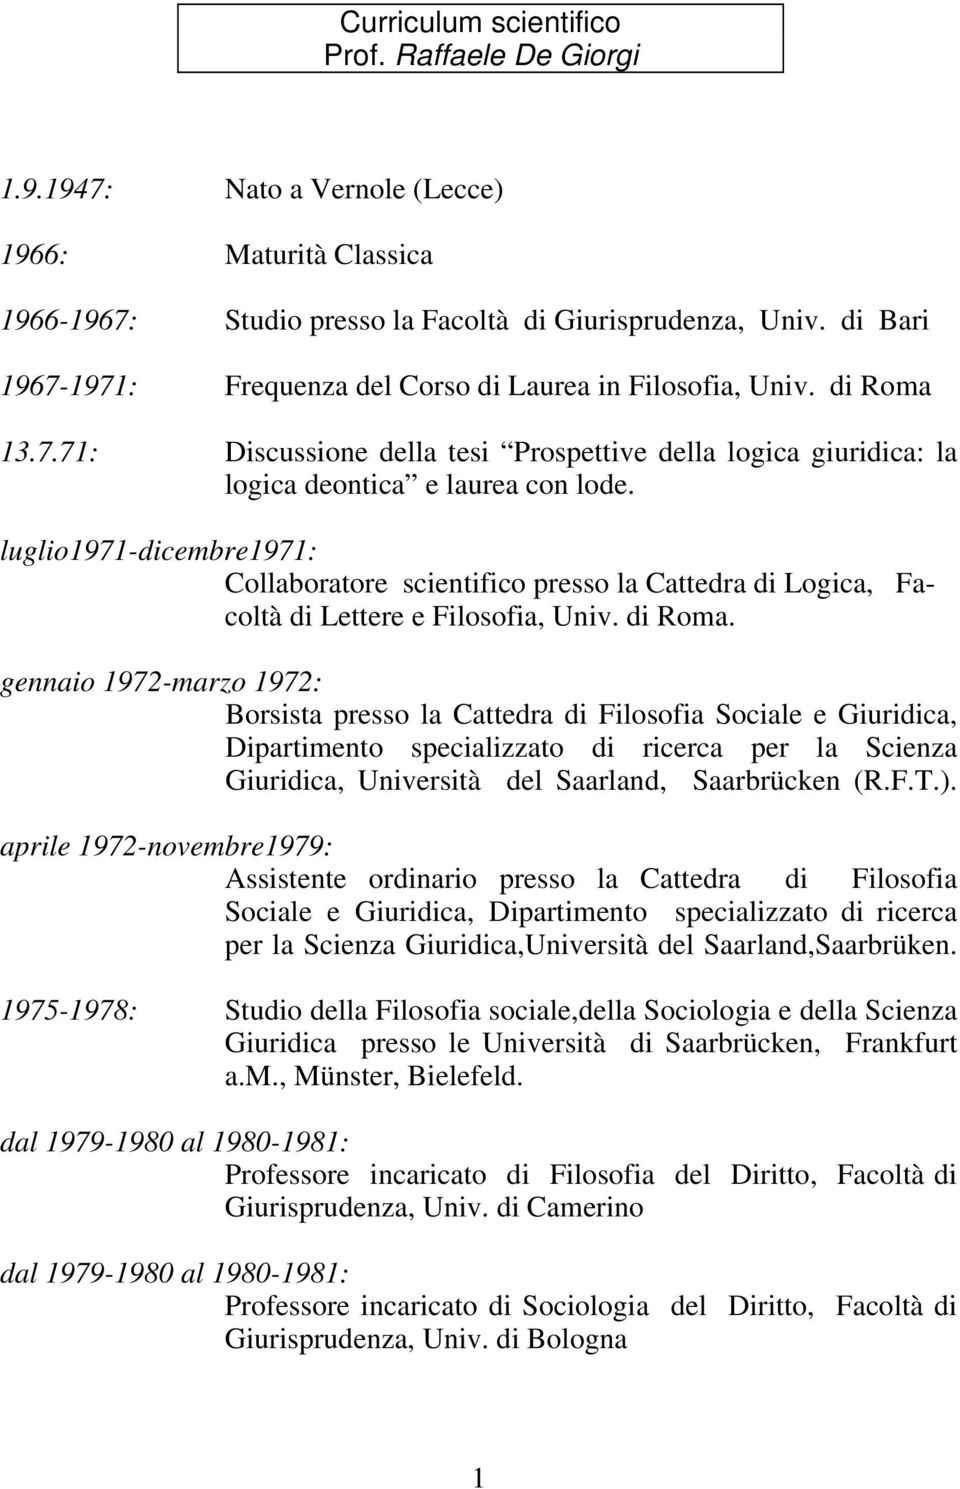 luglio1971-dicembre1971: Collaboratore scientifico presso la Cattedra di Logica, Facoltà di Lettere e Filosofia, Univ. di Roma.